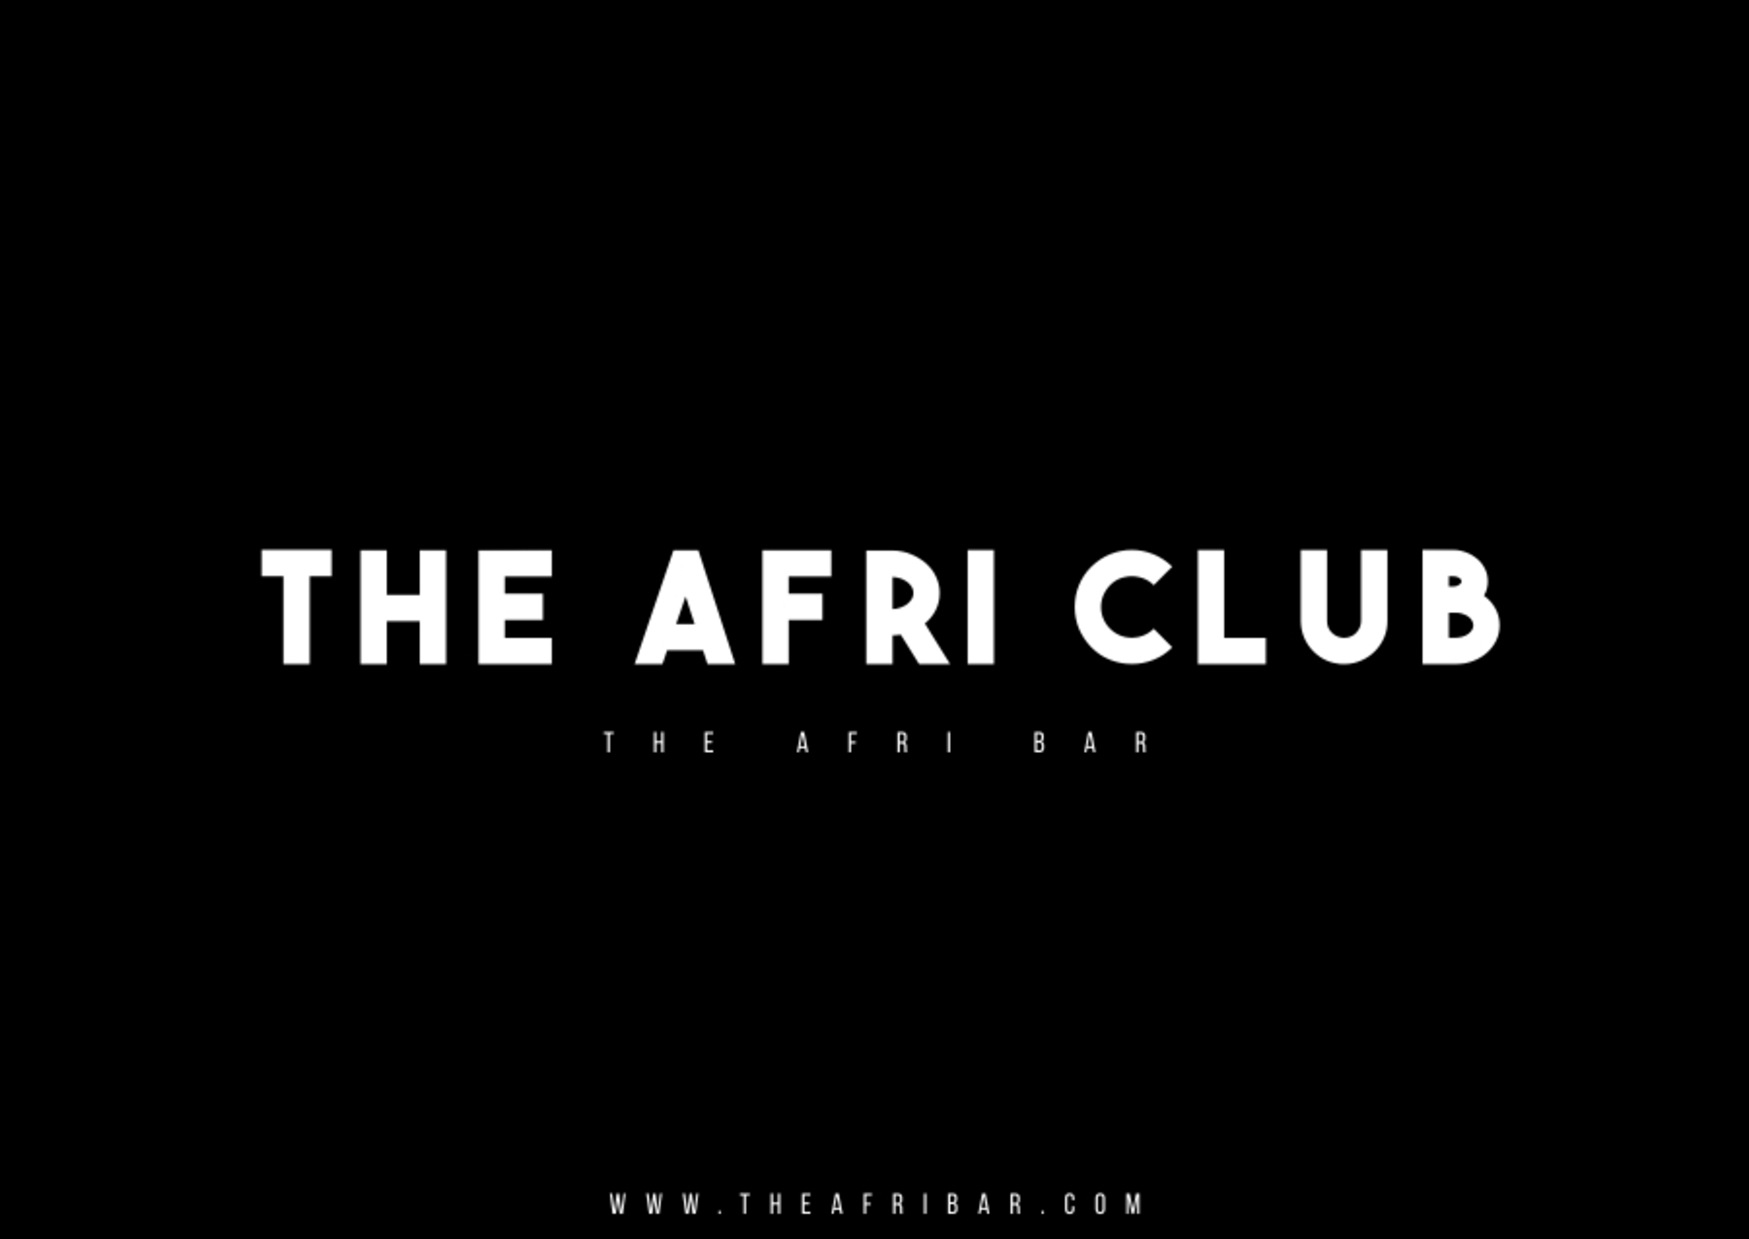 The Afri Club